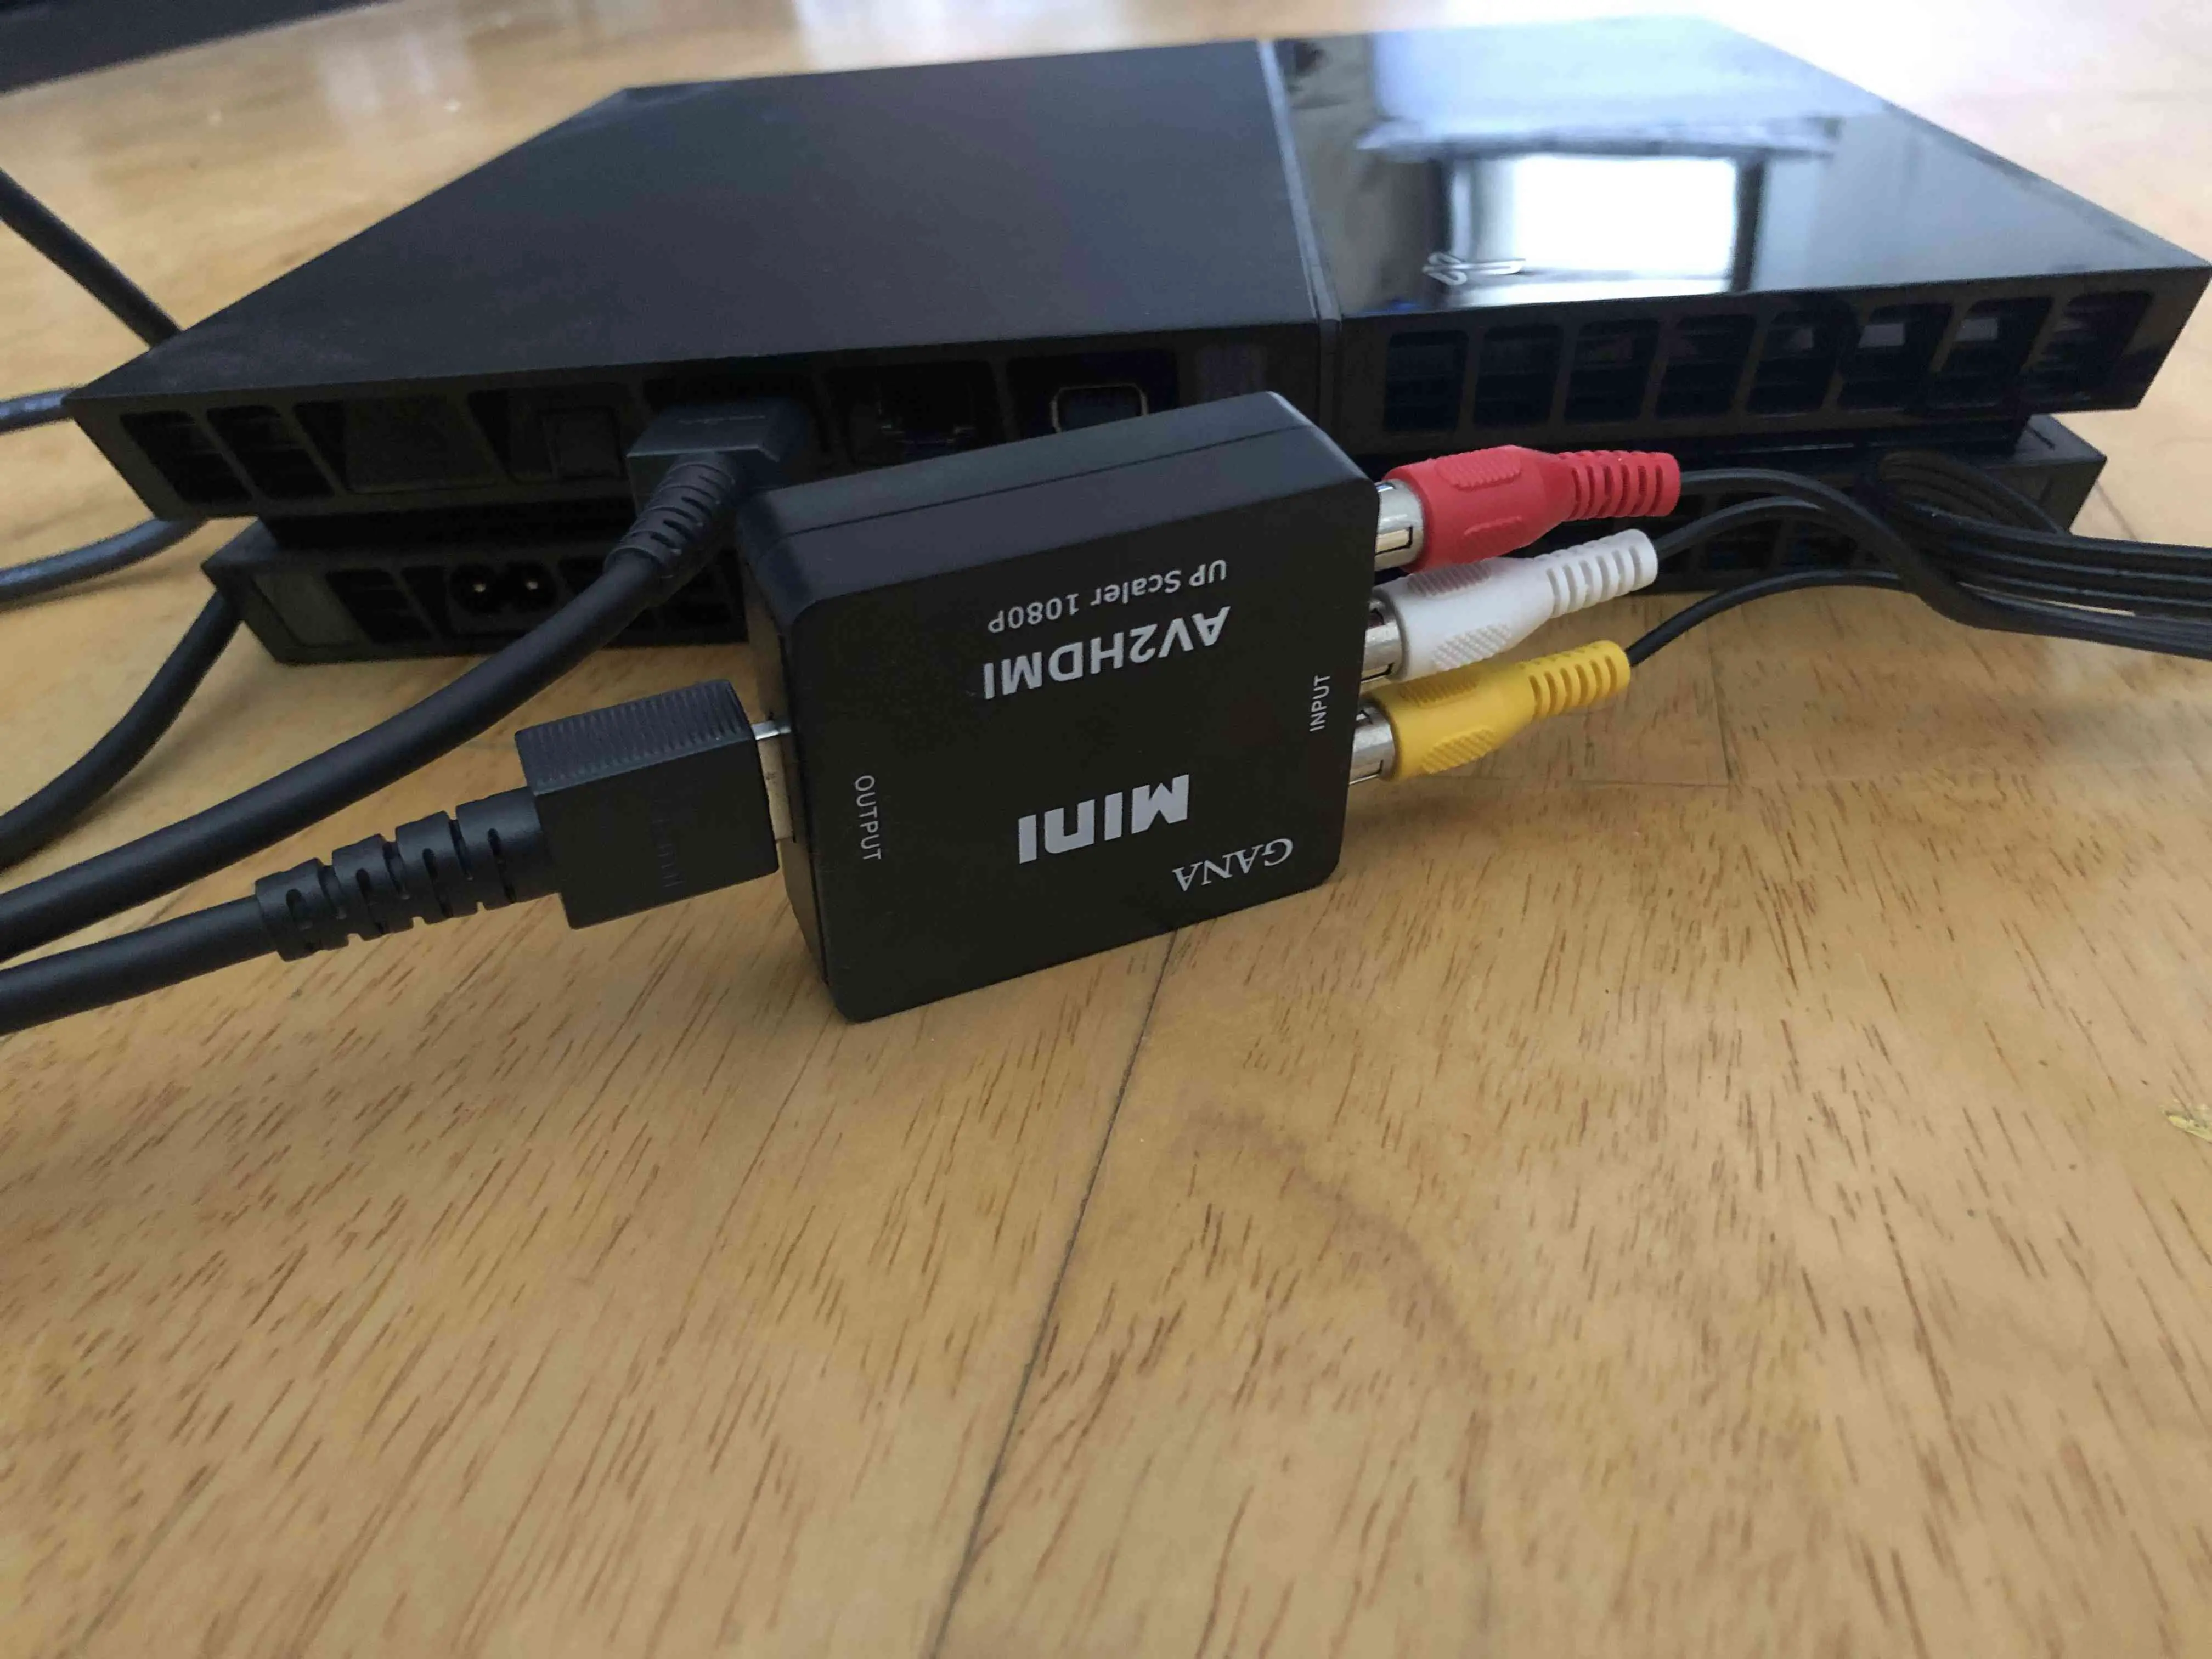 Conecte o cabo HDMI no conversor.